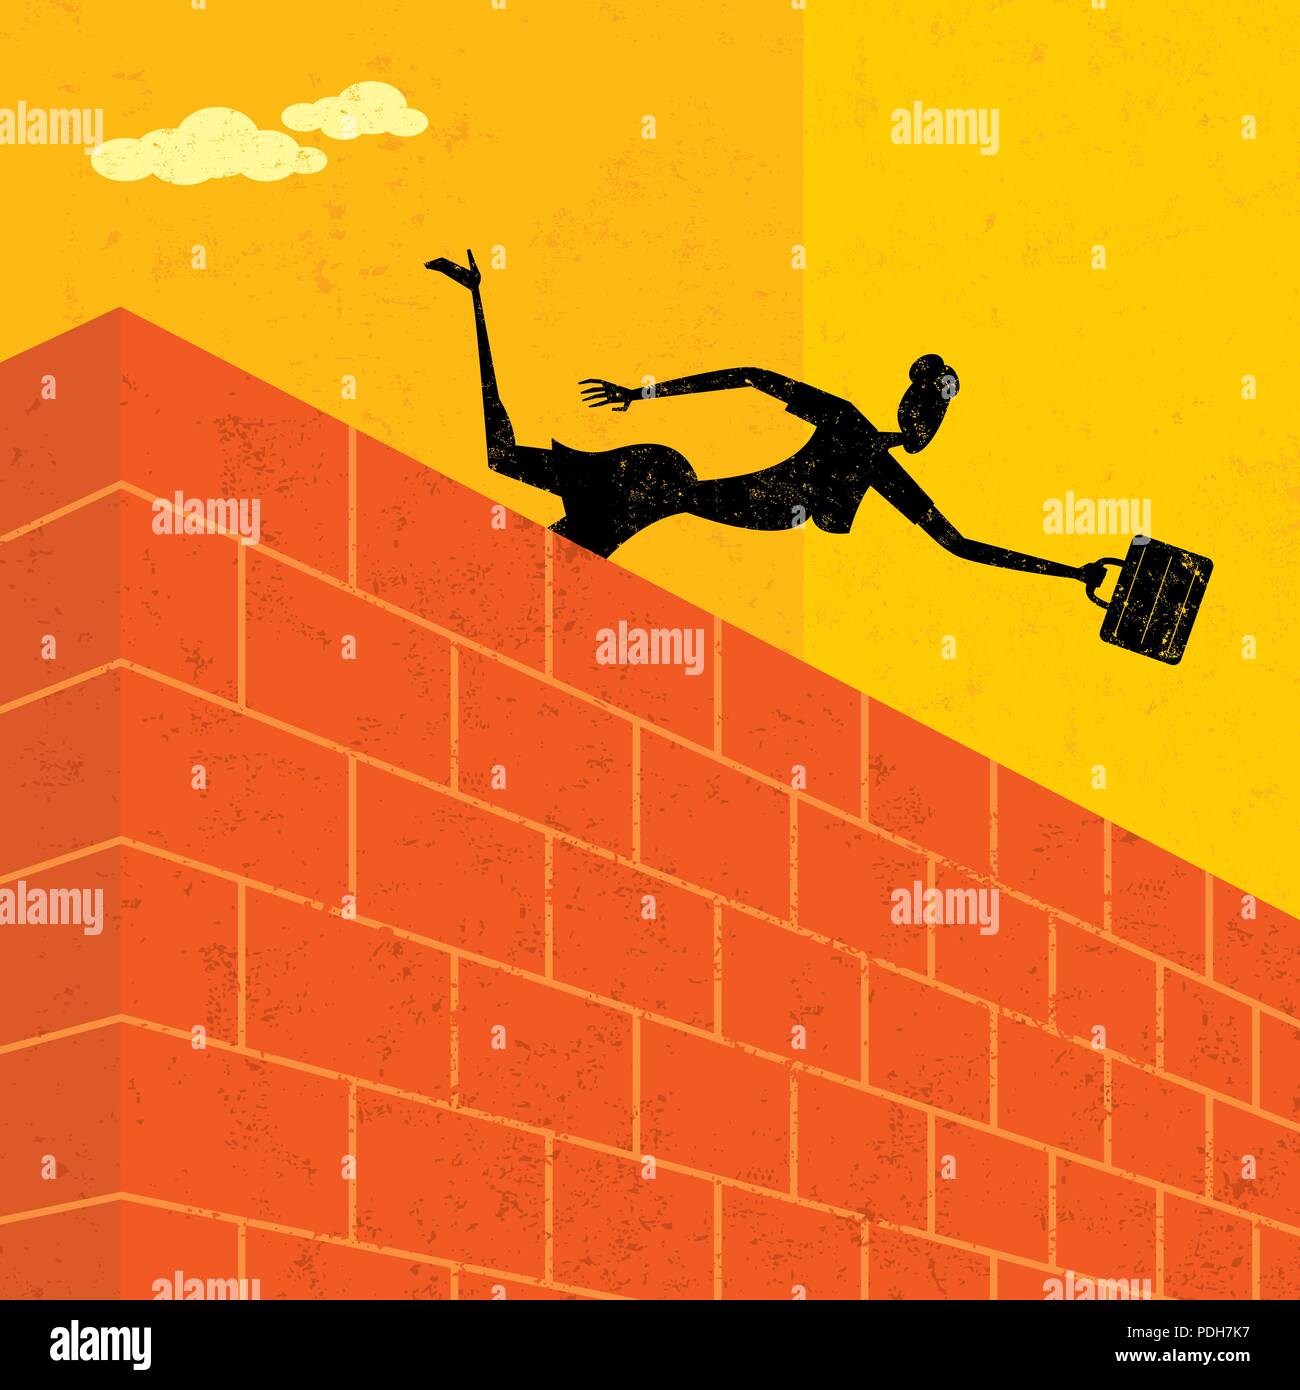 Saltando su un muro di mattoni. Una imprenditrice saltando su un muro di mattoni per raggiungere il suo obiettivo. Illustrazione Vettoriale